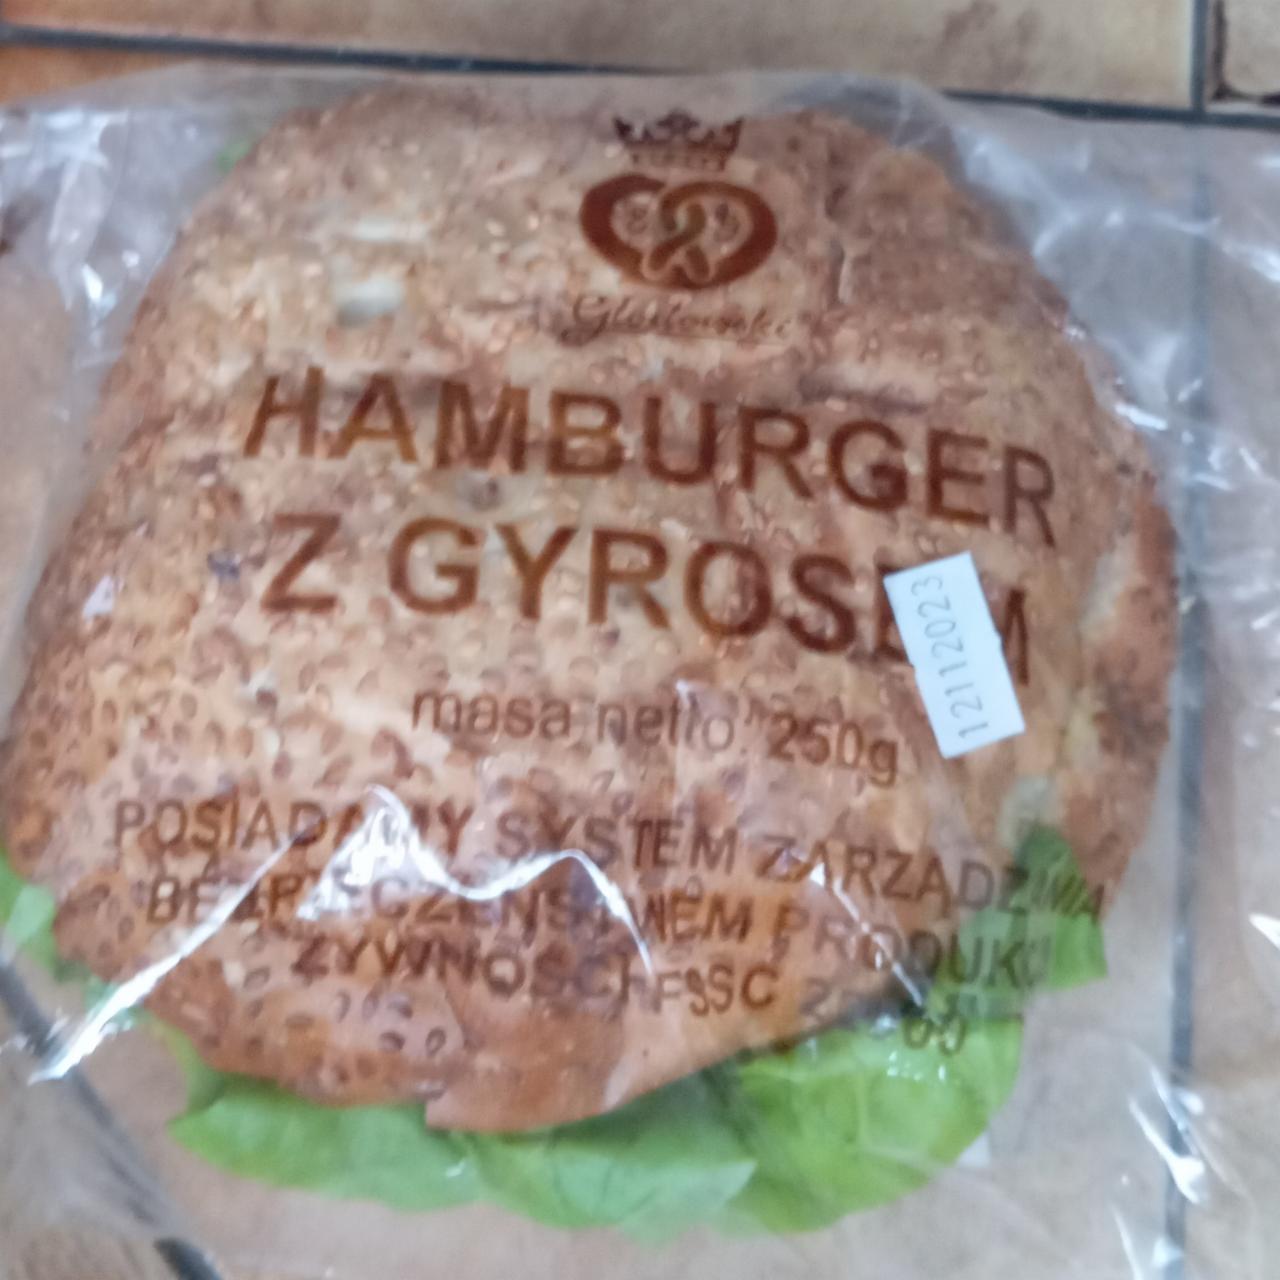 Zdjęcia - Hamburger z gyrosem Glostowski